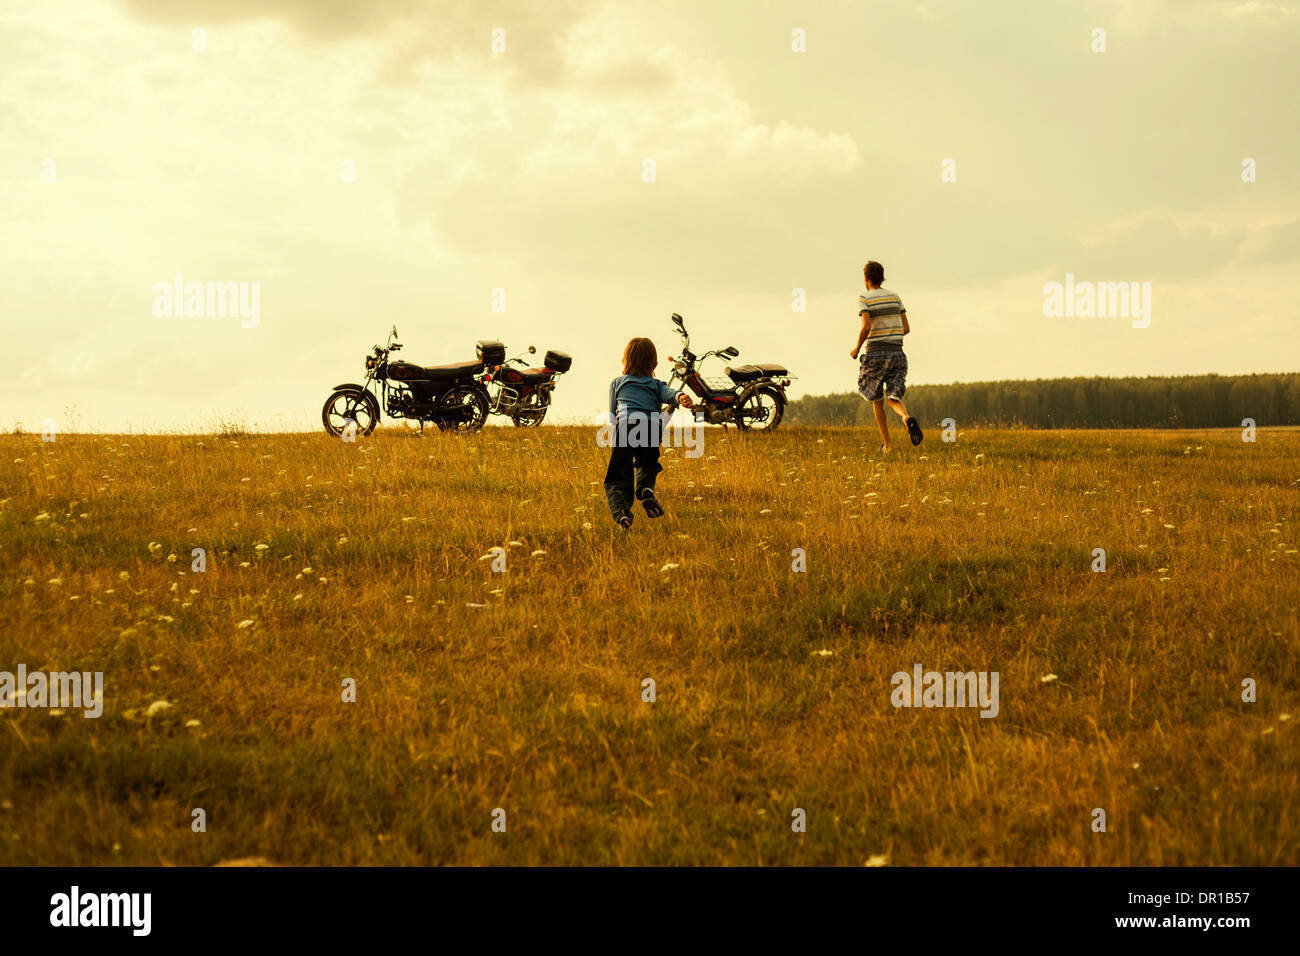 Enfants courant pour les motocycles in rural landscape Banque D'Images